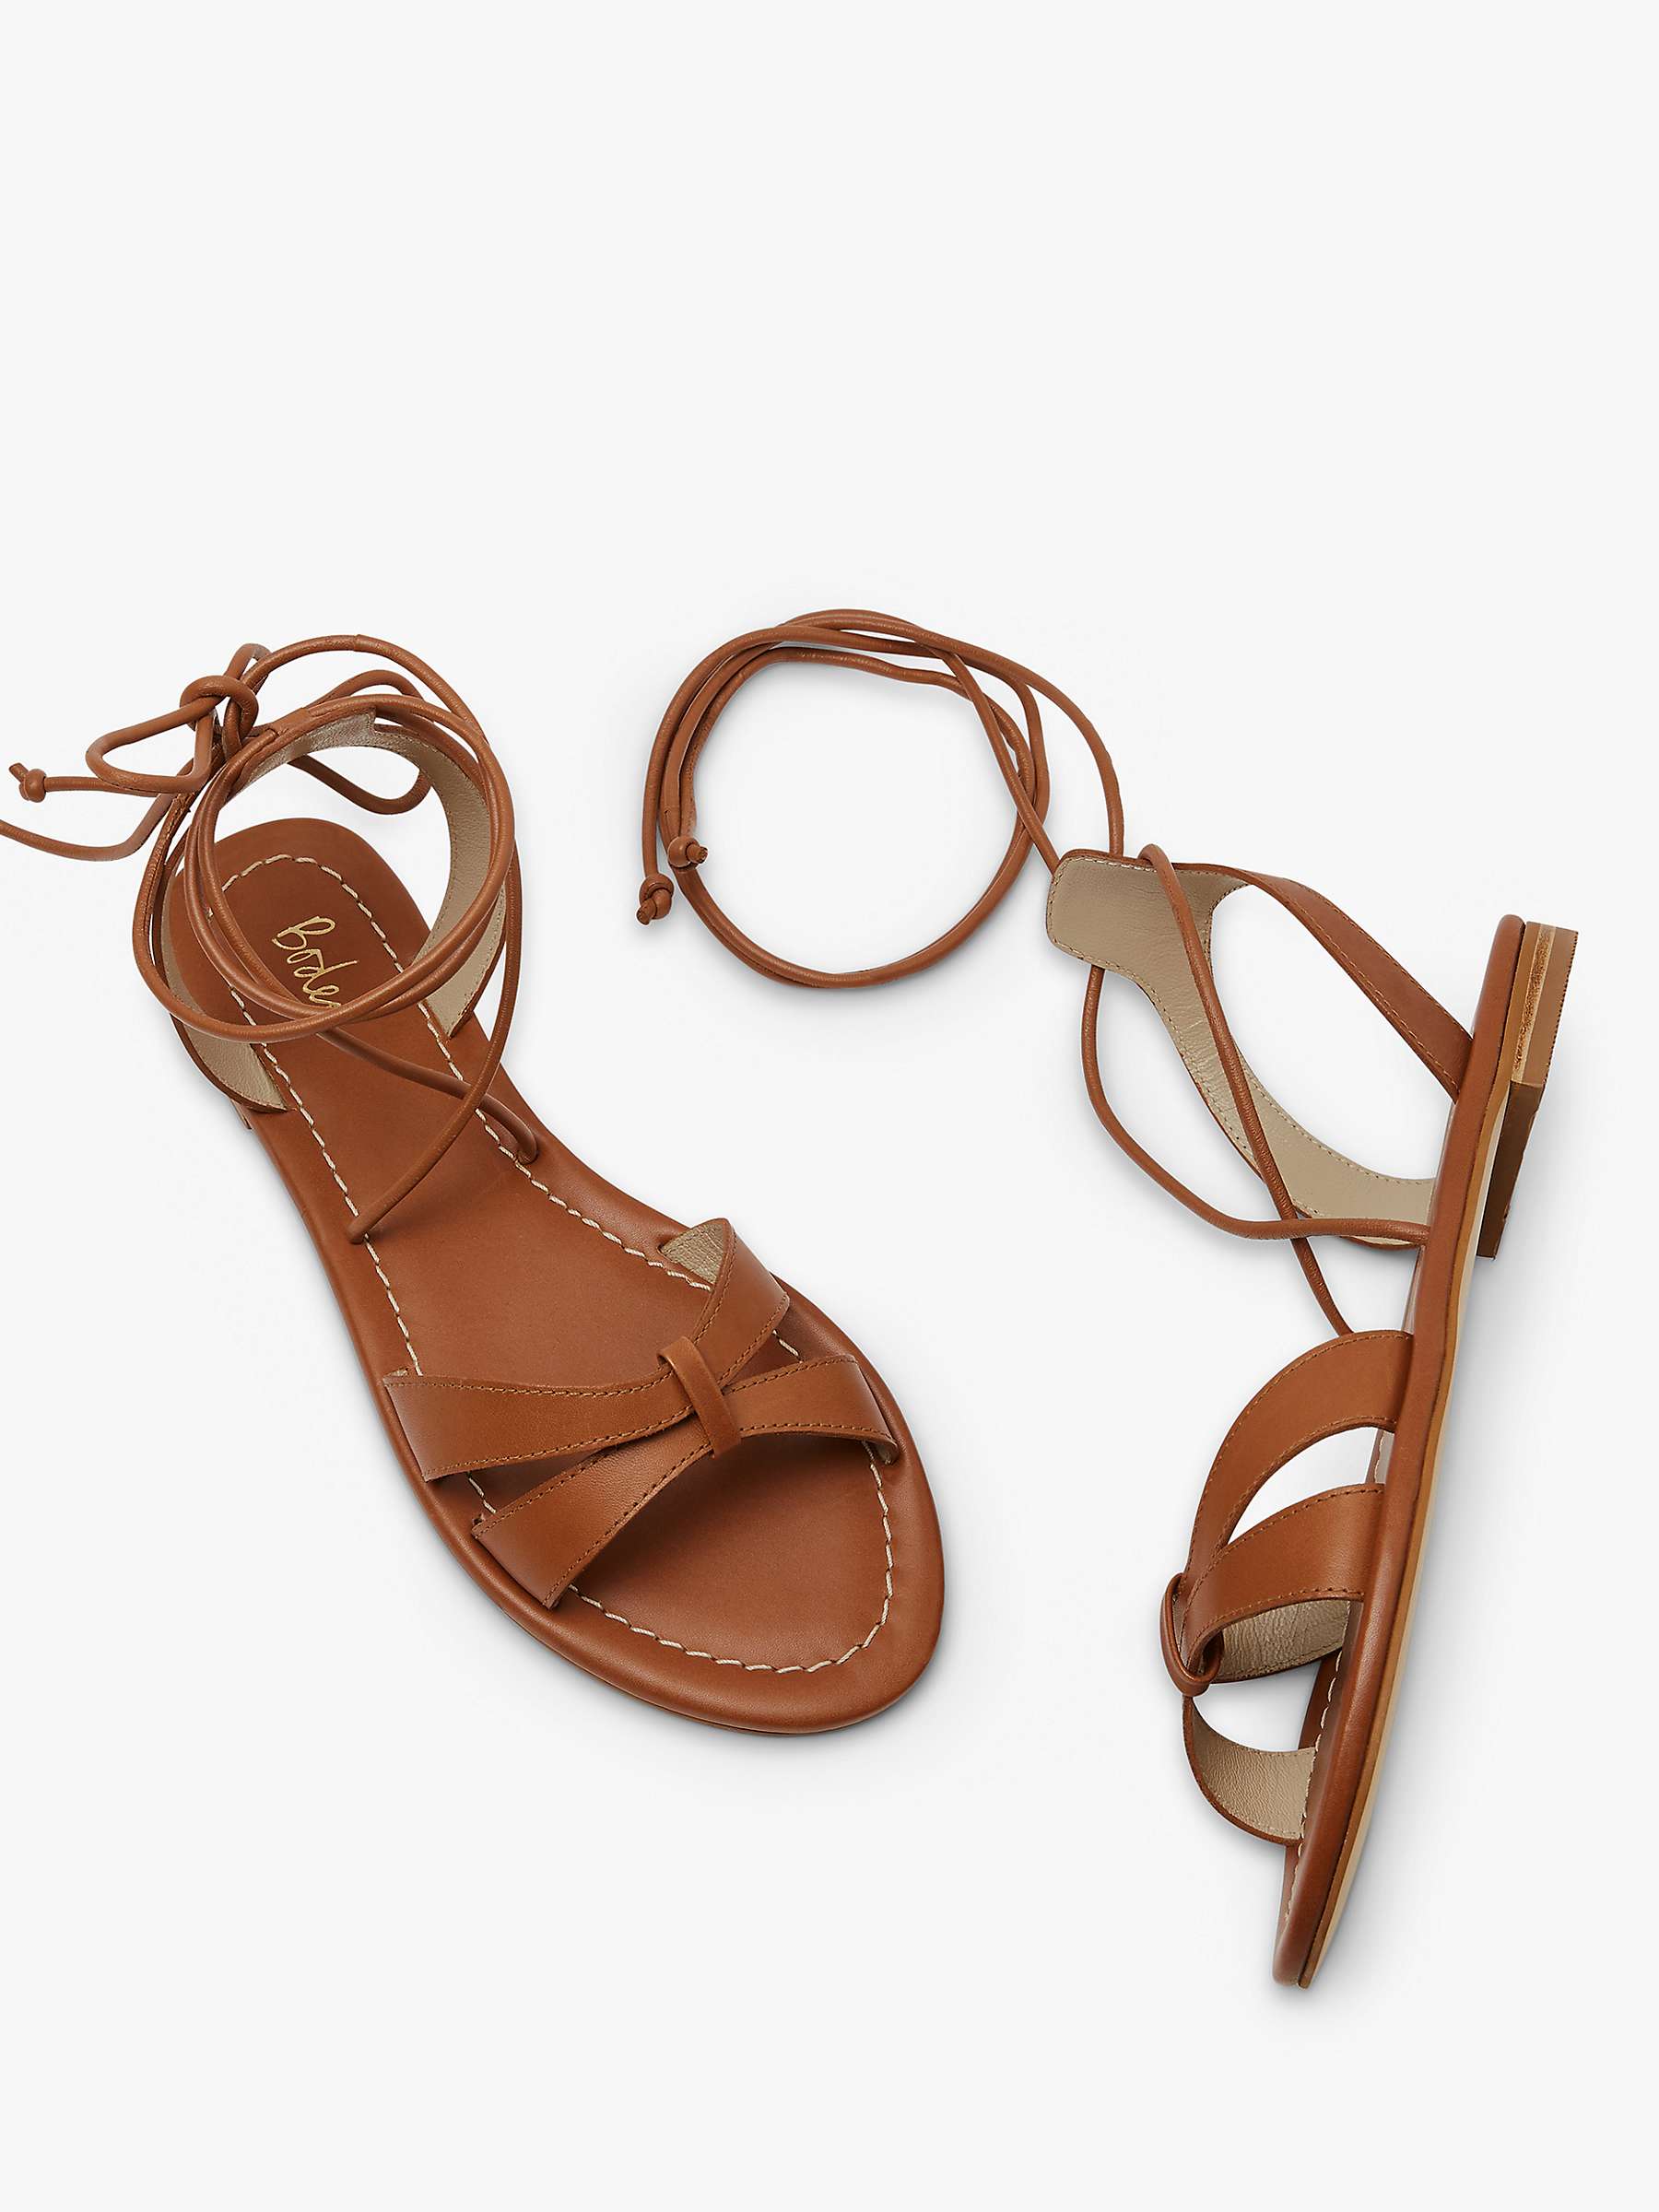 Buy Boden Amelie Sandals Online at johnlewis.com